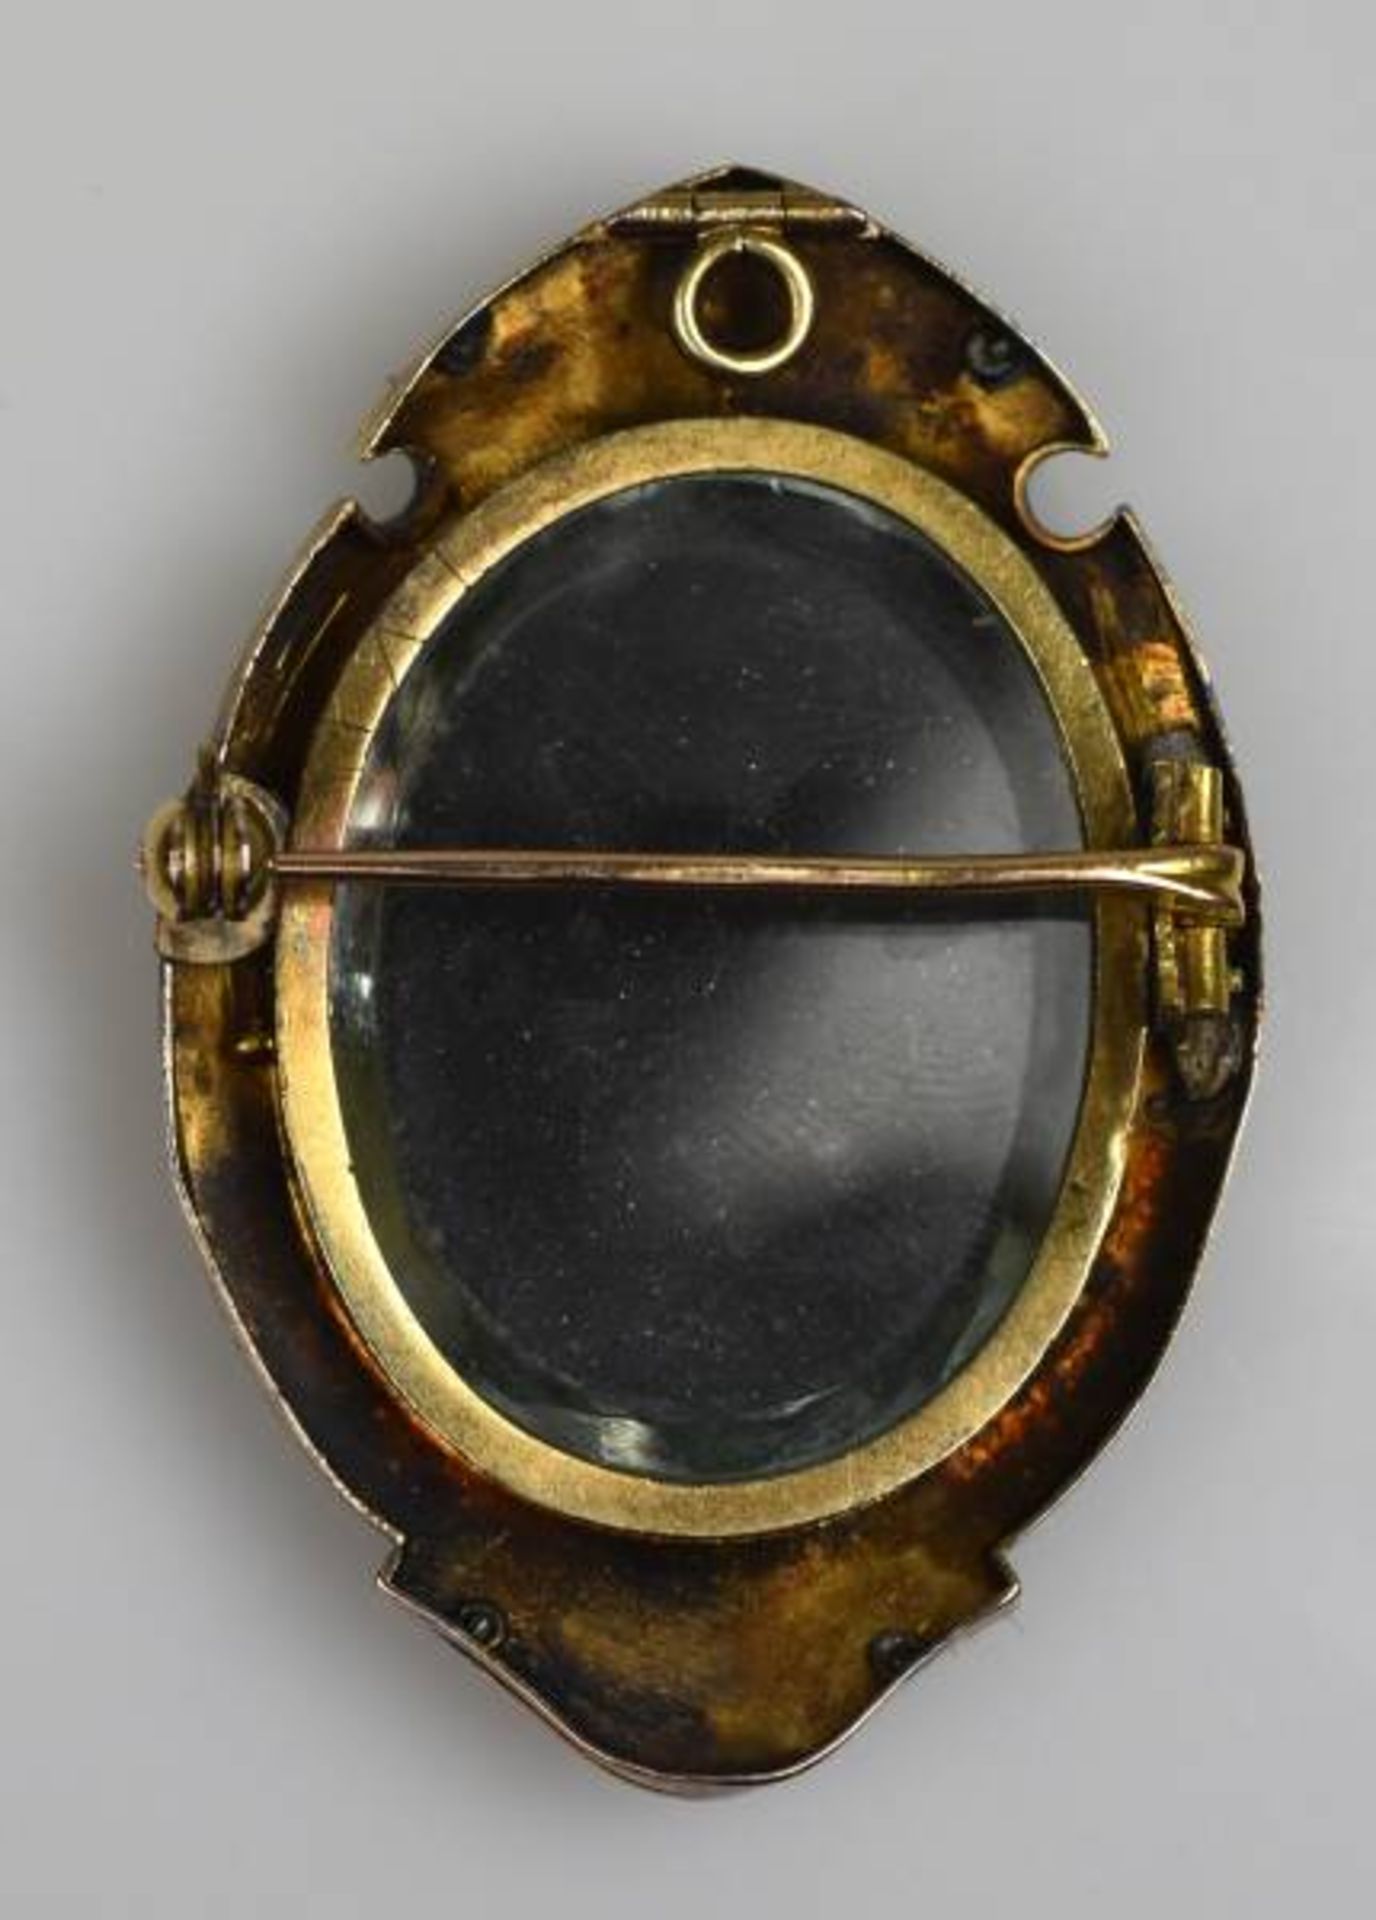 MEDAILLON-ANHAENGER oval, mit Blumenbild in Pietra-Dura-Technik im Goldrahmen 8ct, - Bild 2 aus 2